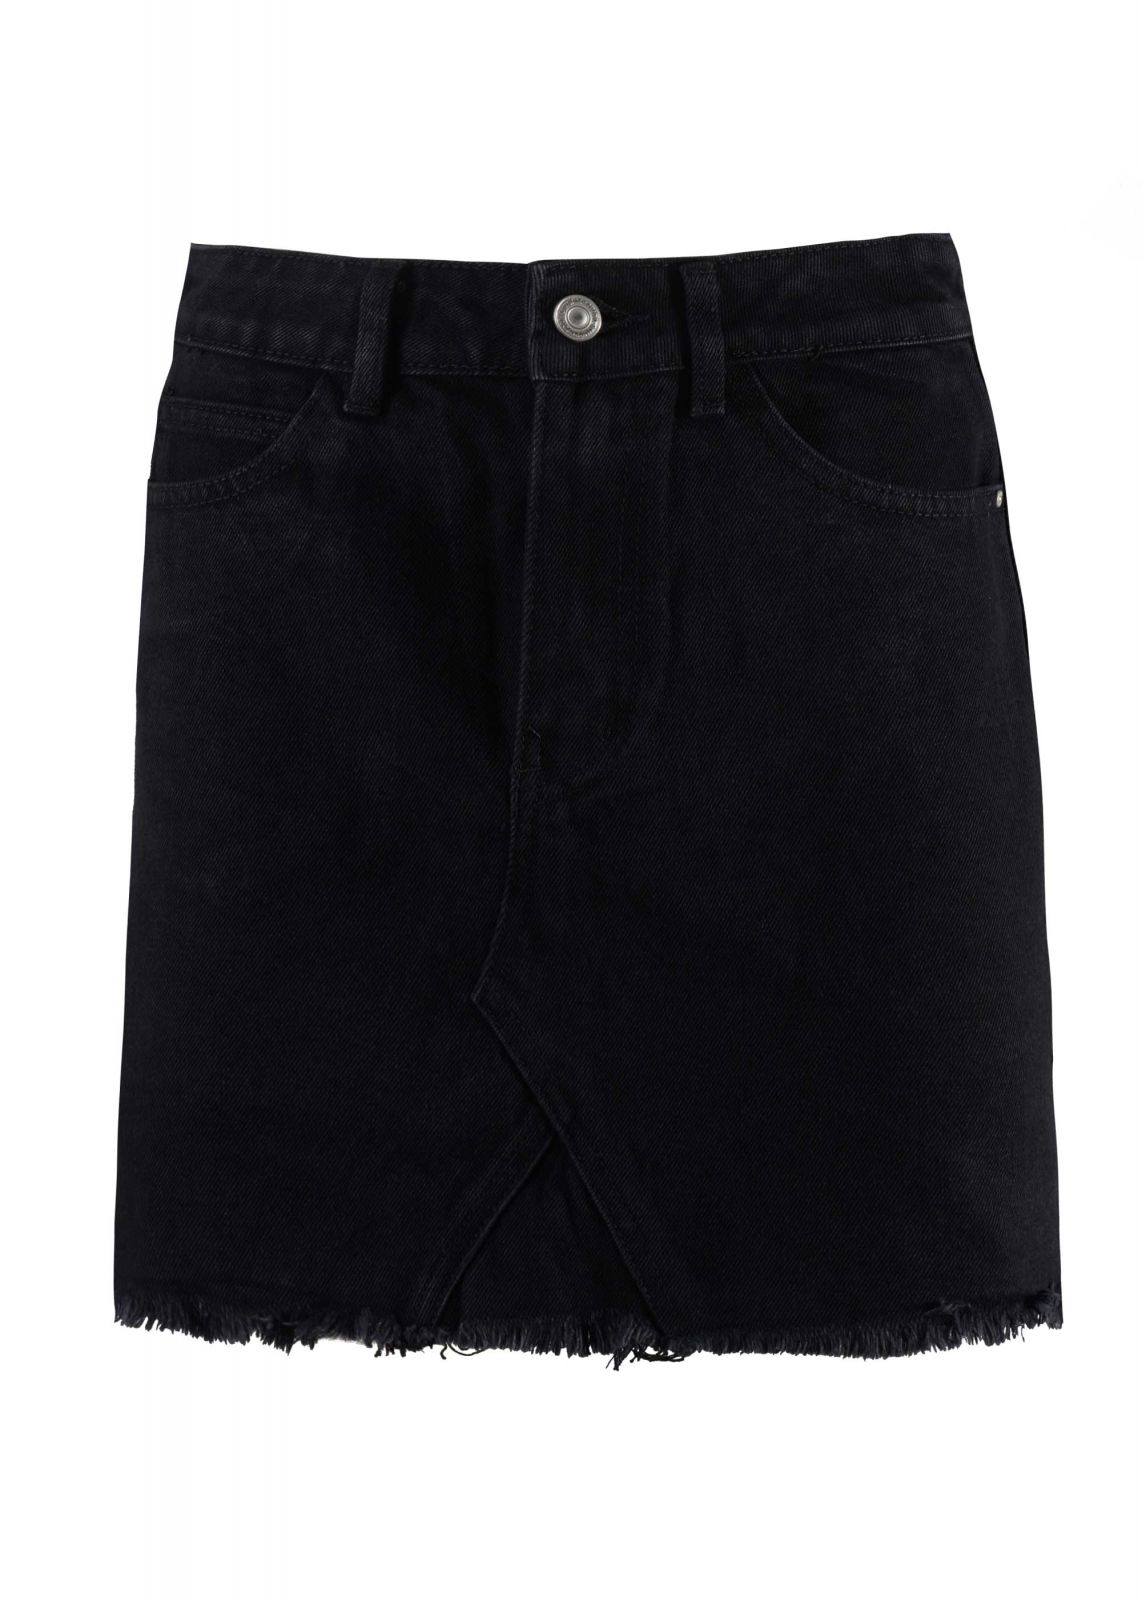 Γυναικεία φούστα jean mini με ελαστικότητα. Denim collection.